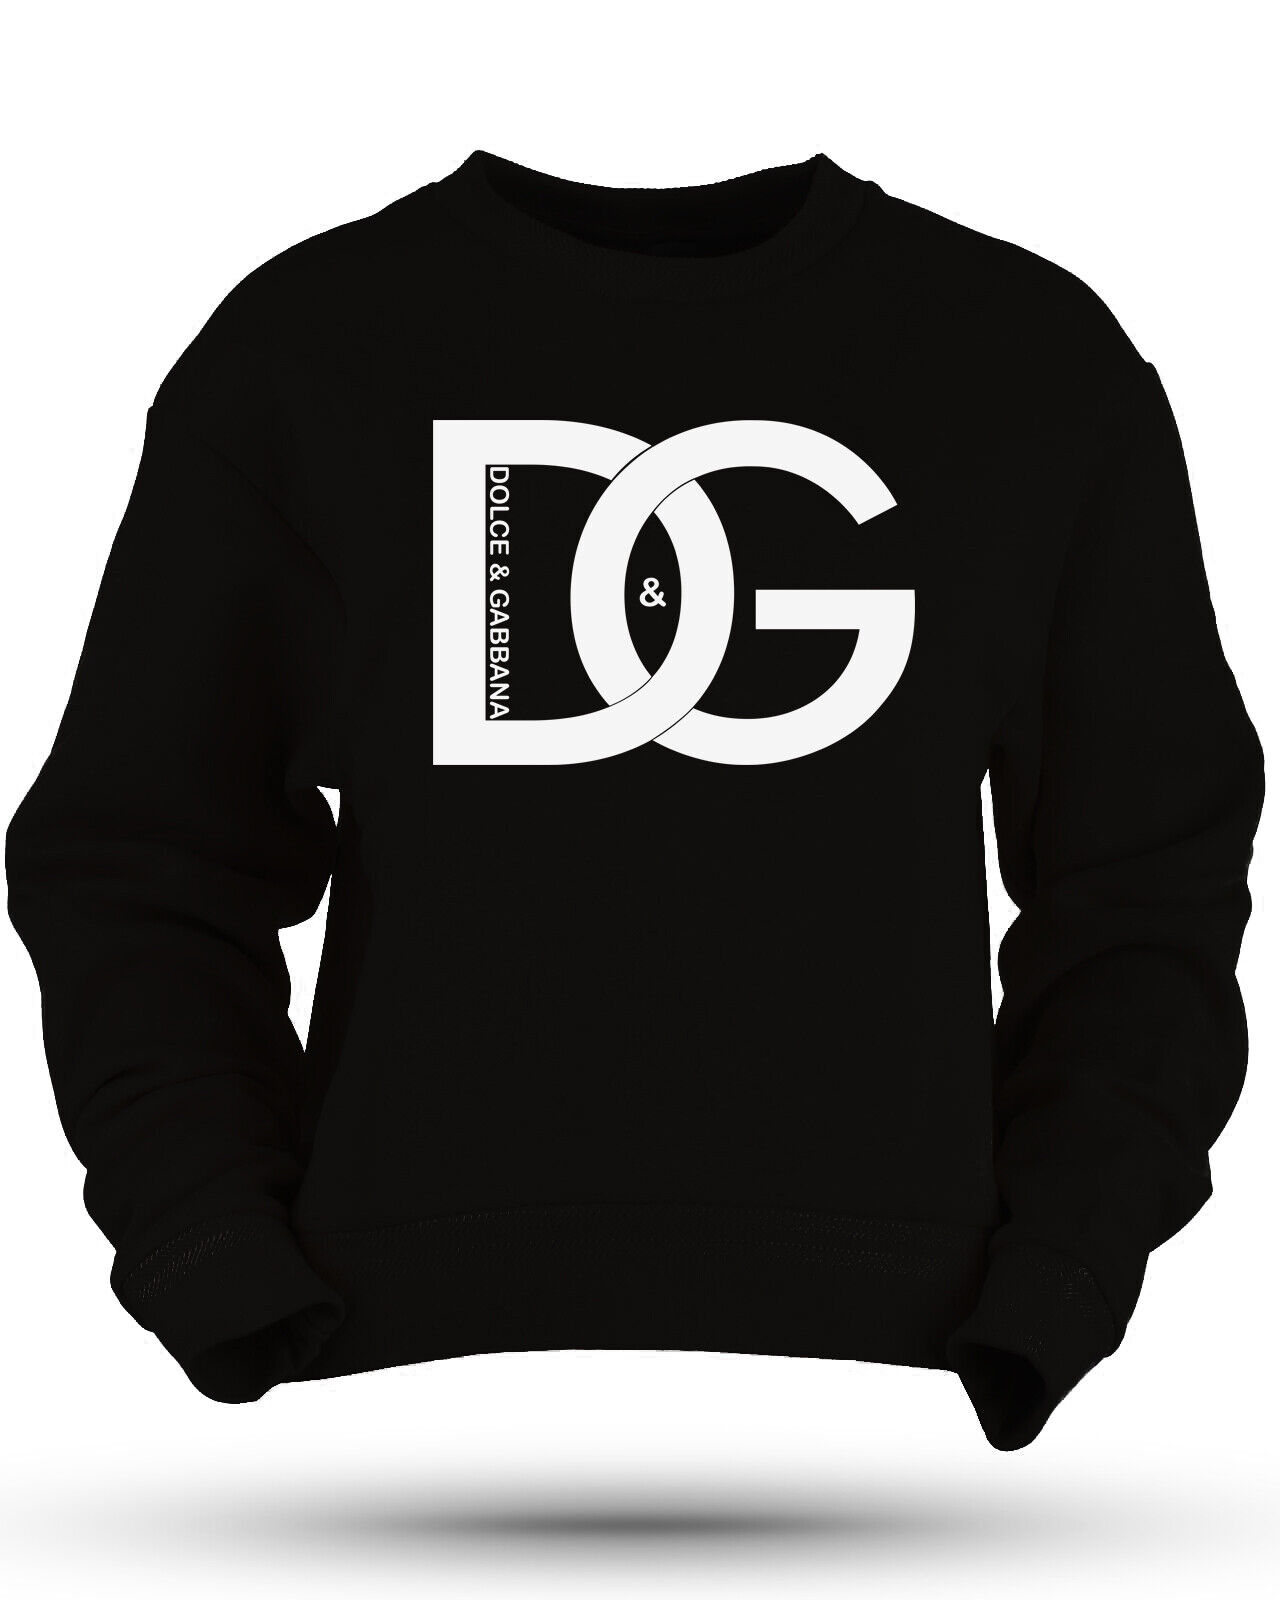 Dolce & Gabbana Logo Sweatshirt Size USA